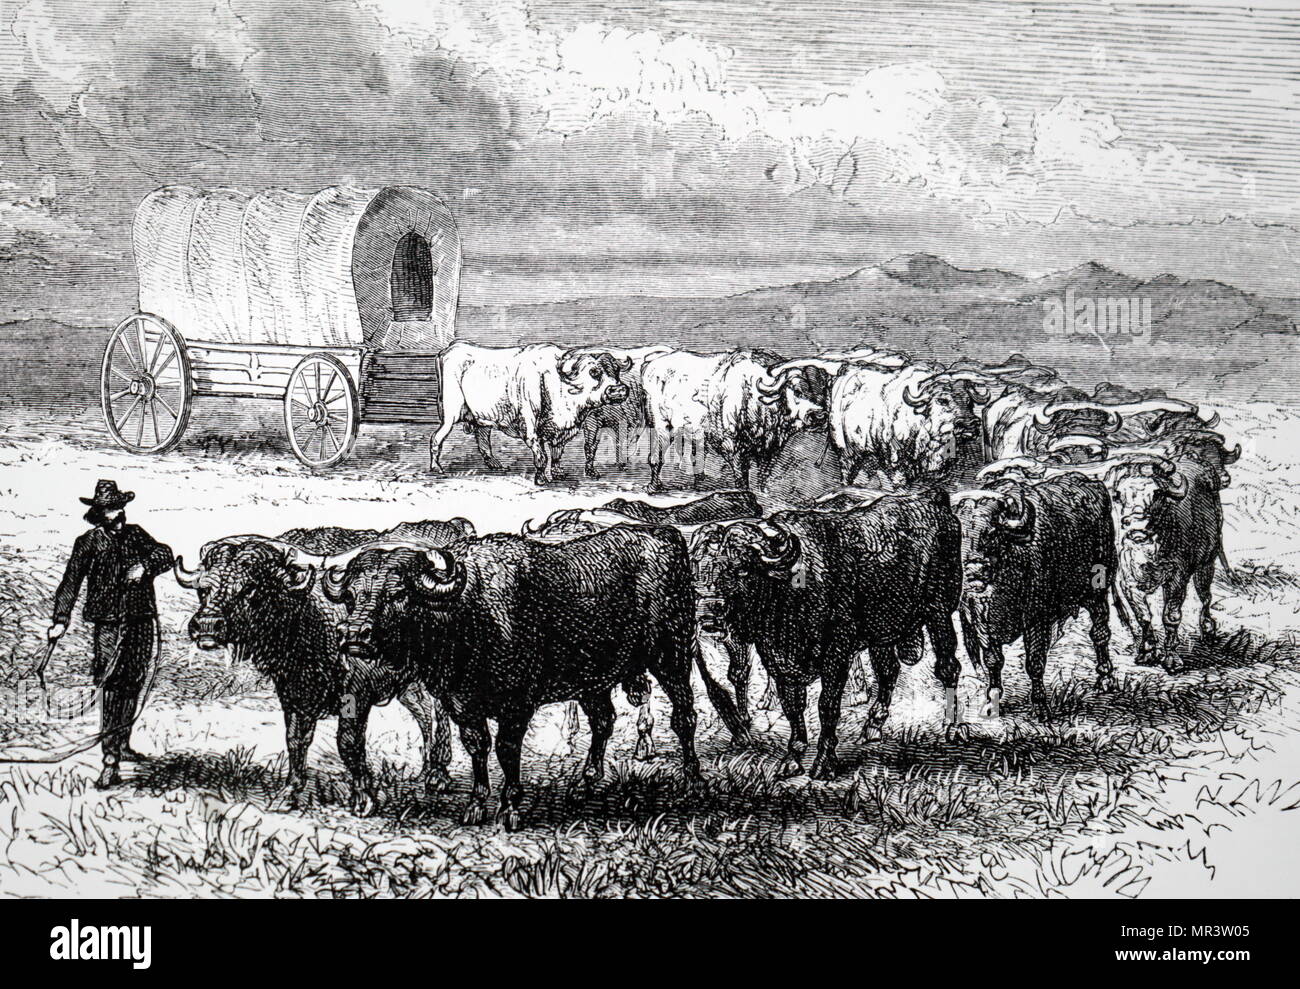 Abbildung: Darstellung eines Ochsen gezogenen Planwagen, ähnlich dem Typ von Emigranten zu Amerika. Vom 19. Jahrhundert Stockfoto